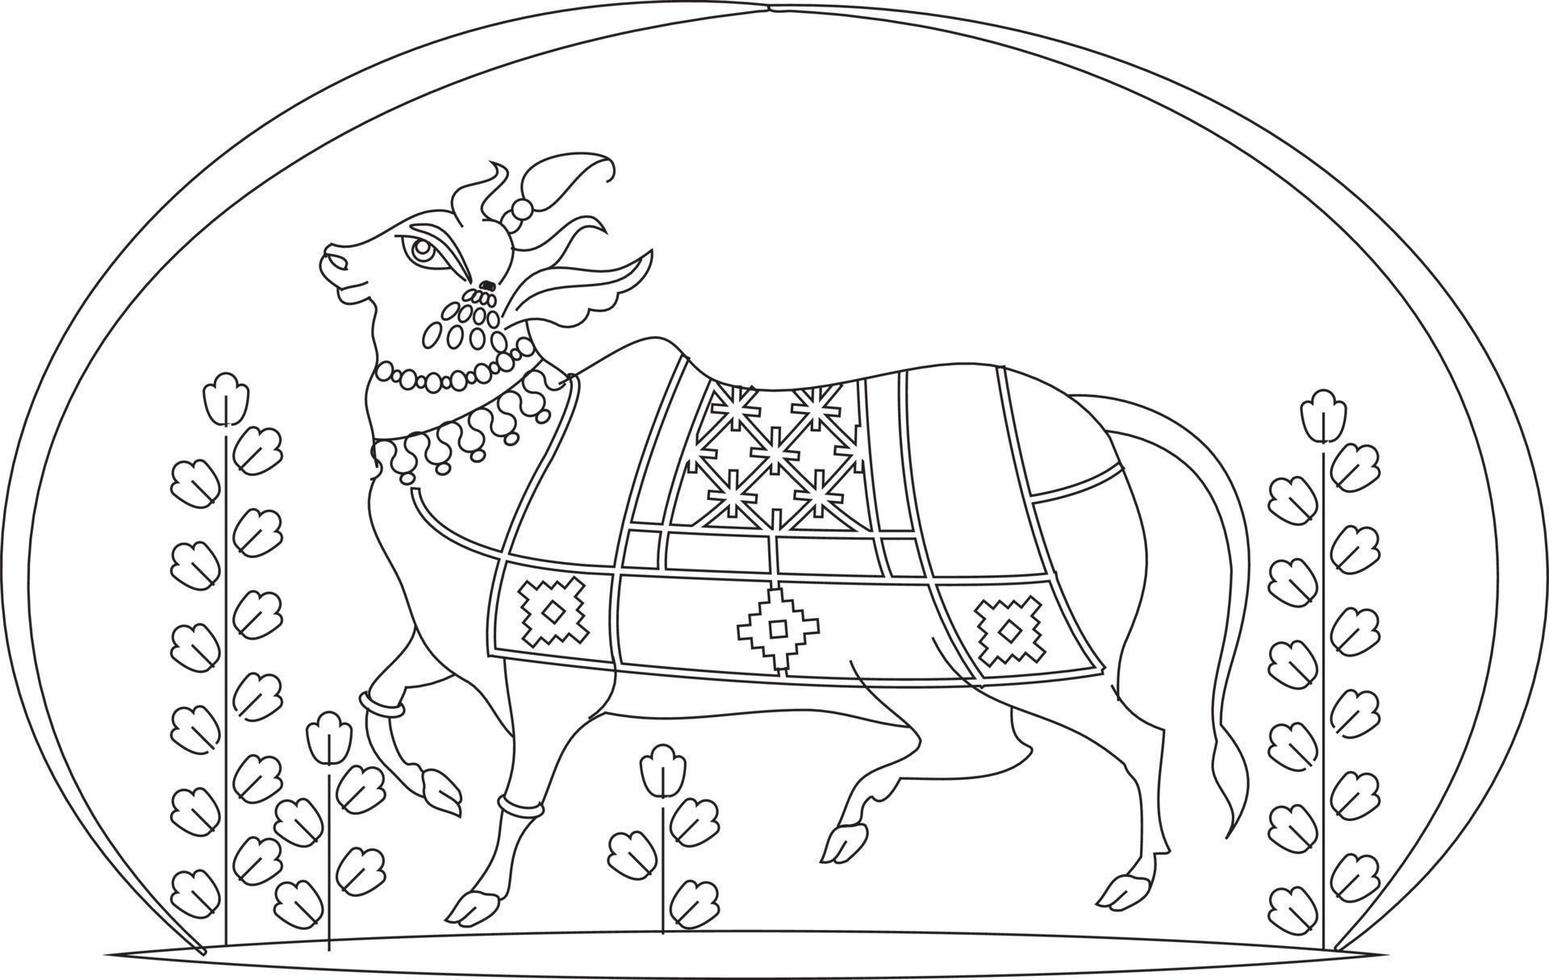 kalamkari indische traditionelle kunst auf leinenstoffen. heiliges kuhdesign auf dem unterschiedlichen hintergrund. für Textildruck, Logo, Tapete vektor